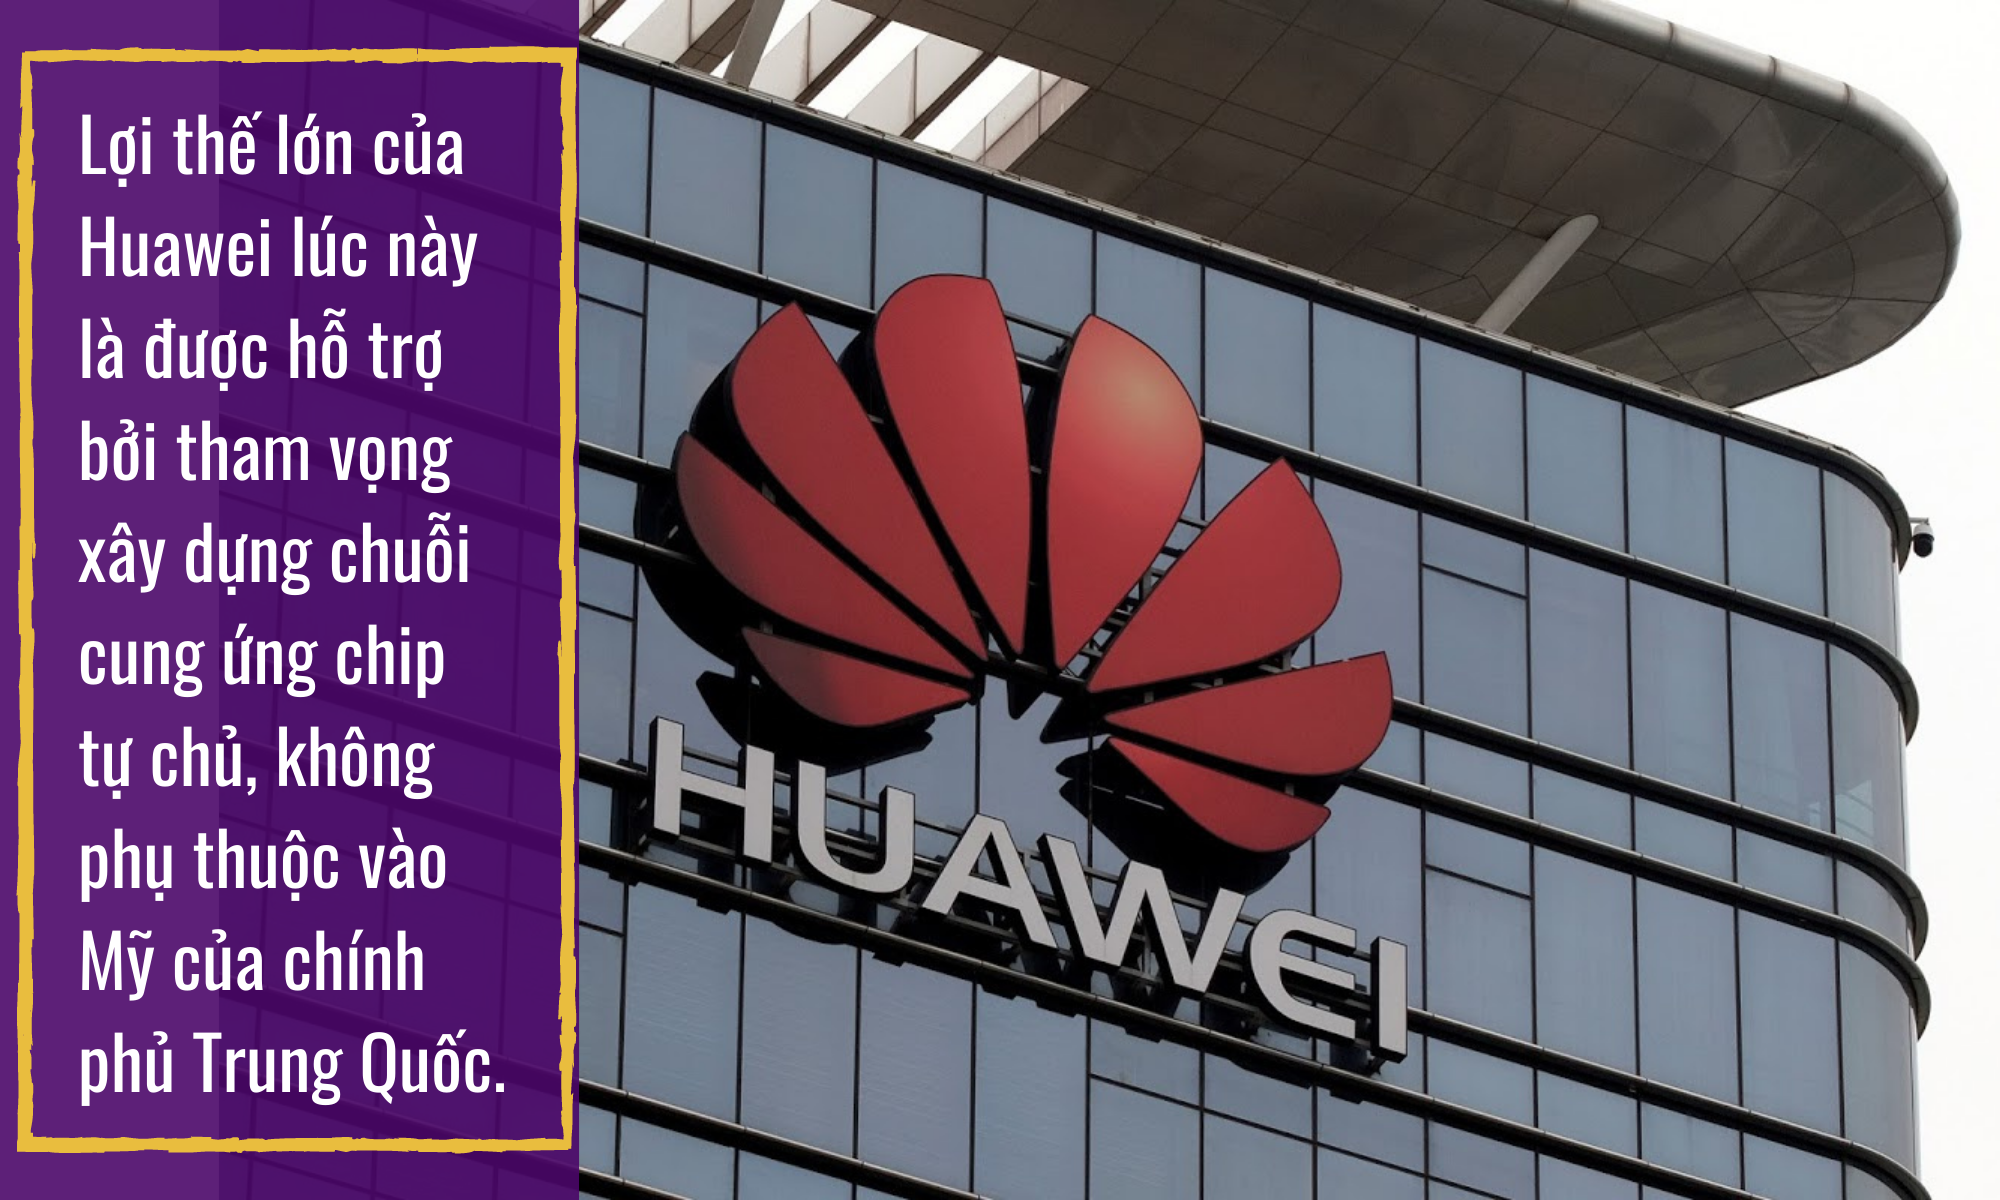 Hơn 2 năm lọt vào danh sách đen của Mỹ, Huawei đang &quot;tìm đường sống&quot; như thế nào? - Ảnh 7.